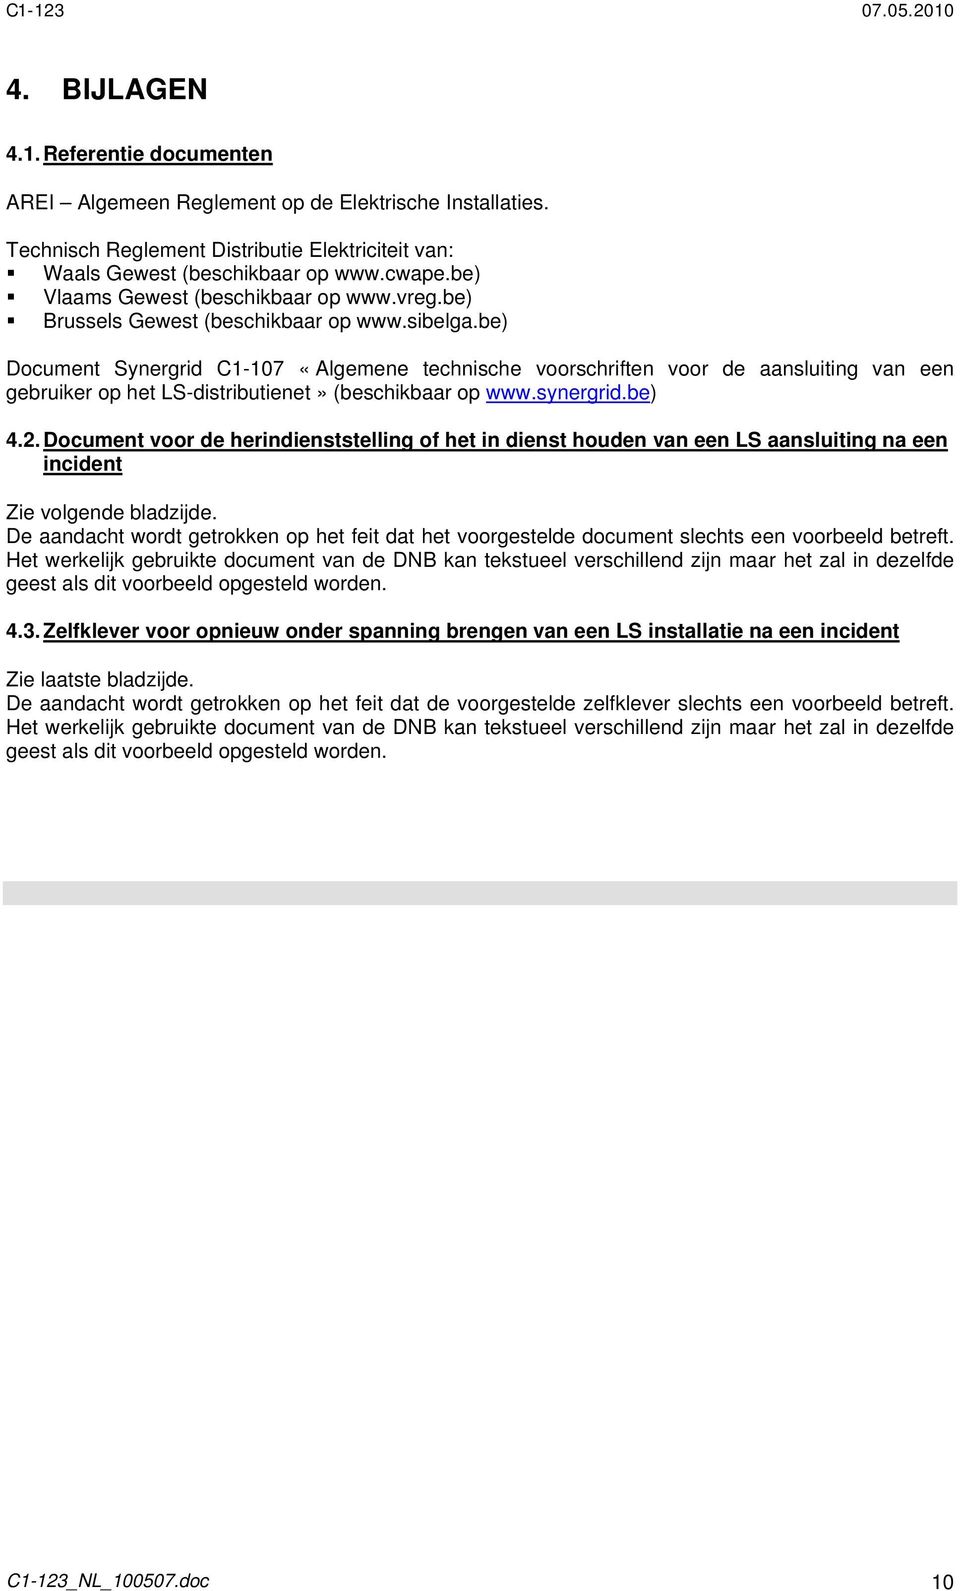 be) Document Synergrid C1-107 «Algemene technische voorschriften voor de aansluiting van een gebruiker op het LS-distributienet» (beschikbaar op www.synergrid.be) 4.2.